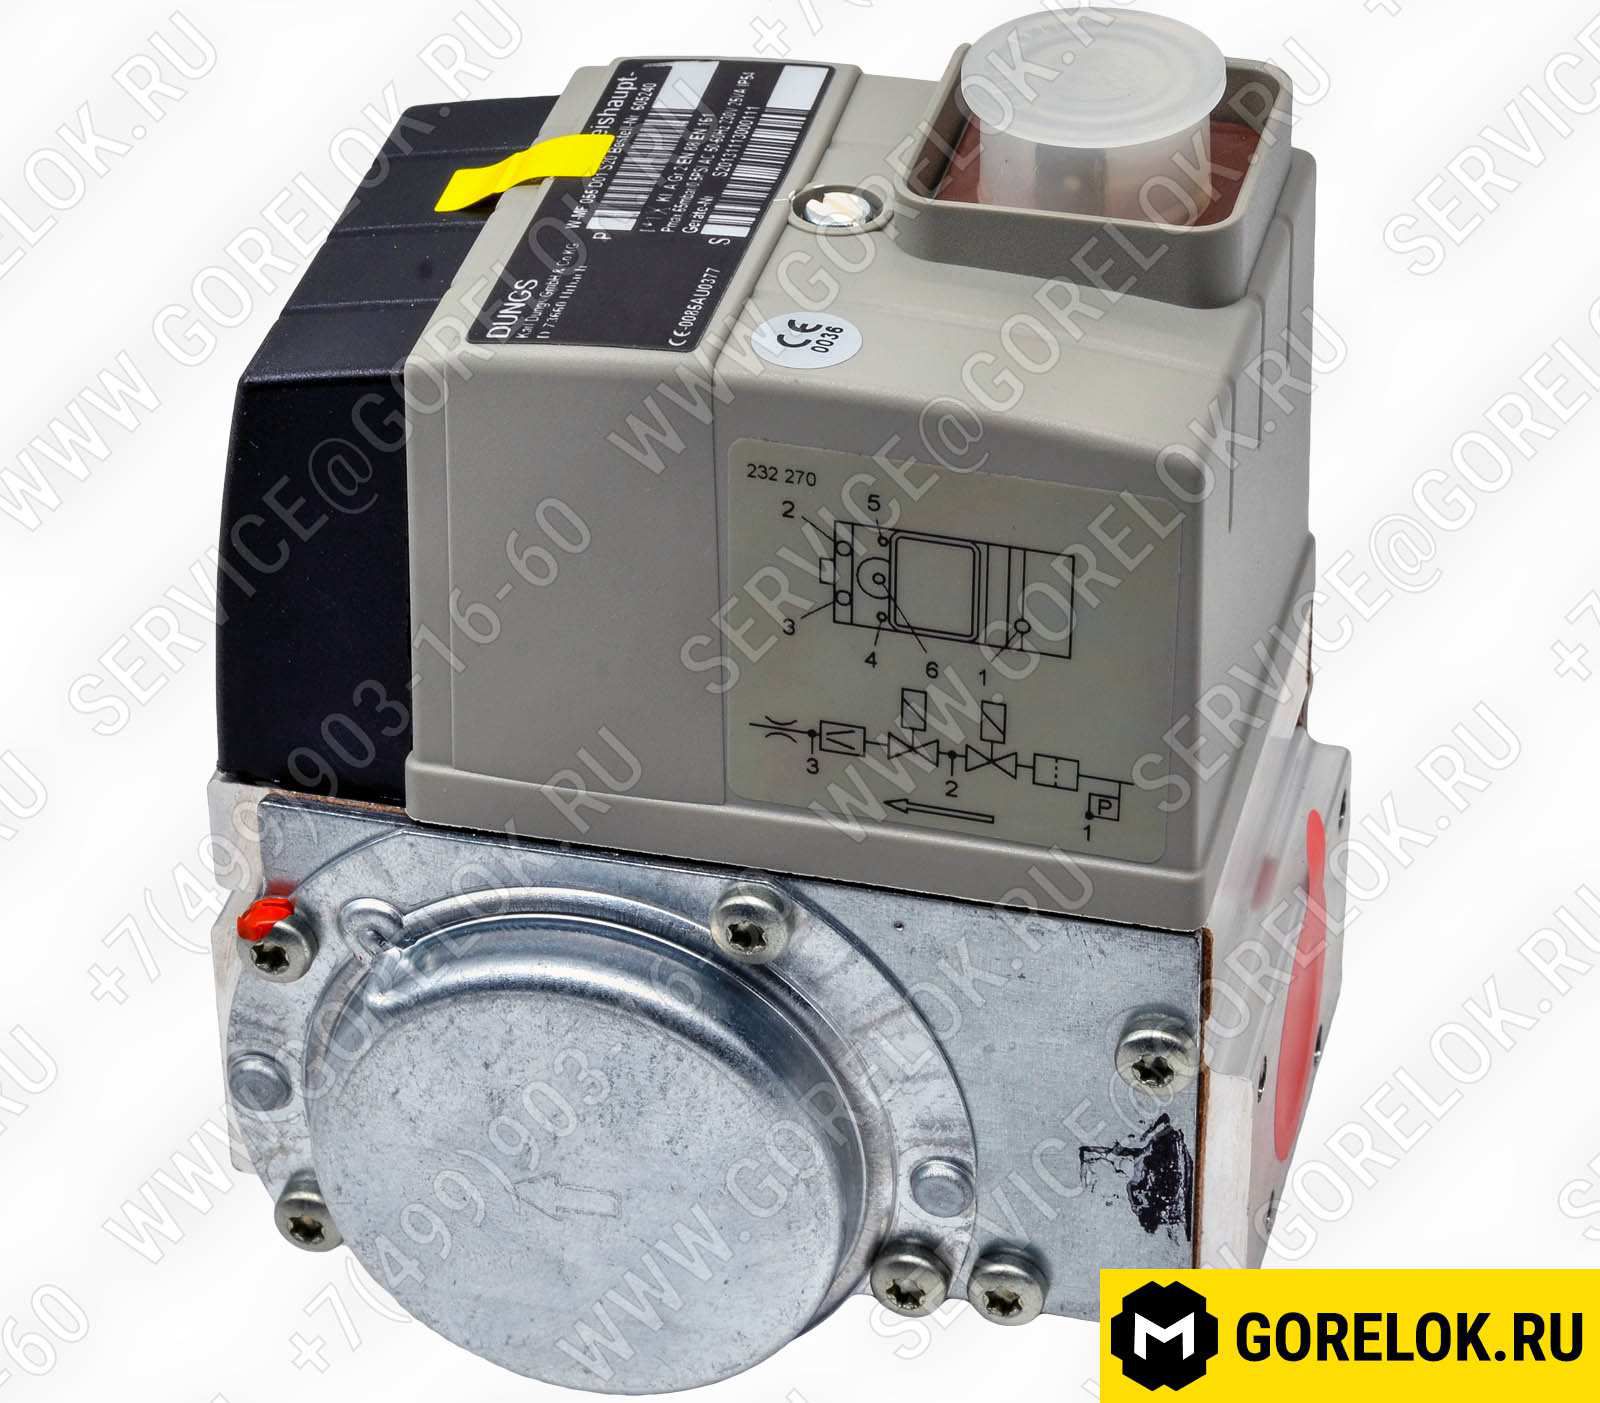 We605-2409 Газовые компоненты: Газовый коллектор в сборе Rp 2" 65301024